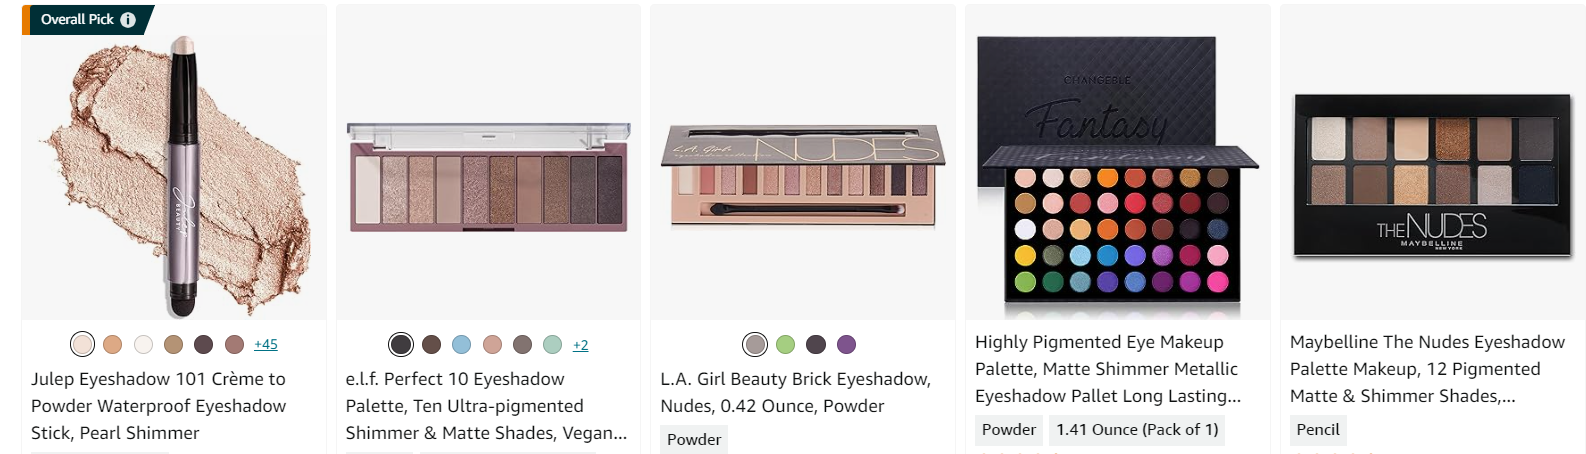 Julep eyeshadow, ELF eyeshadow, and three other eyeshadow brands.